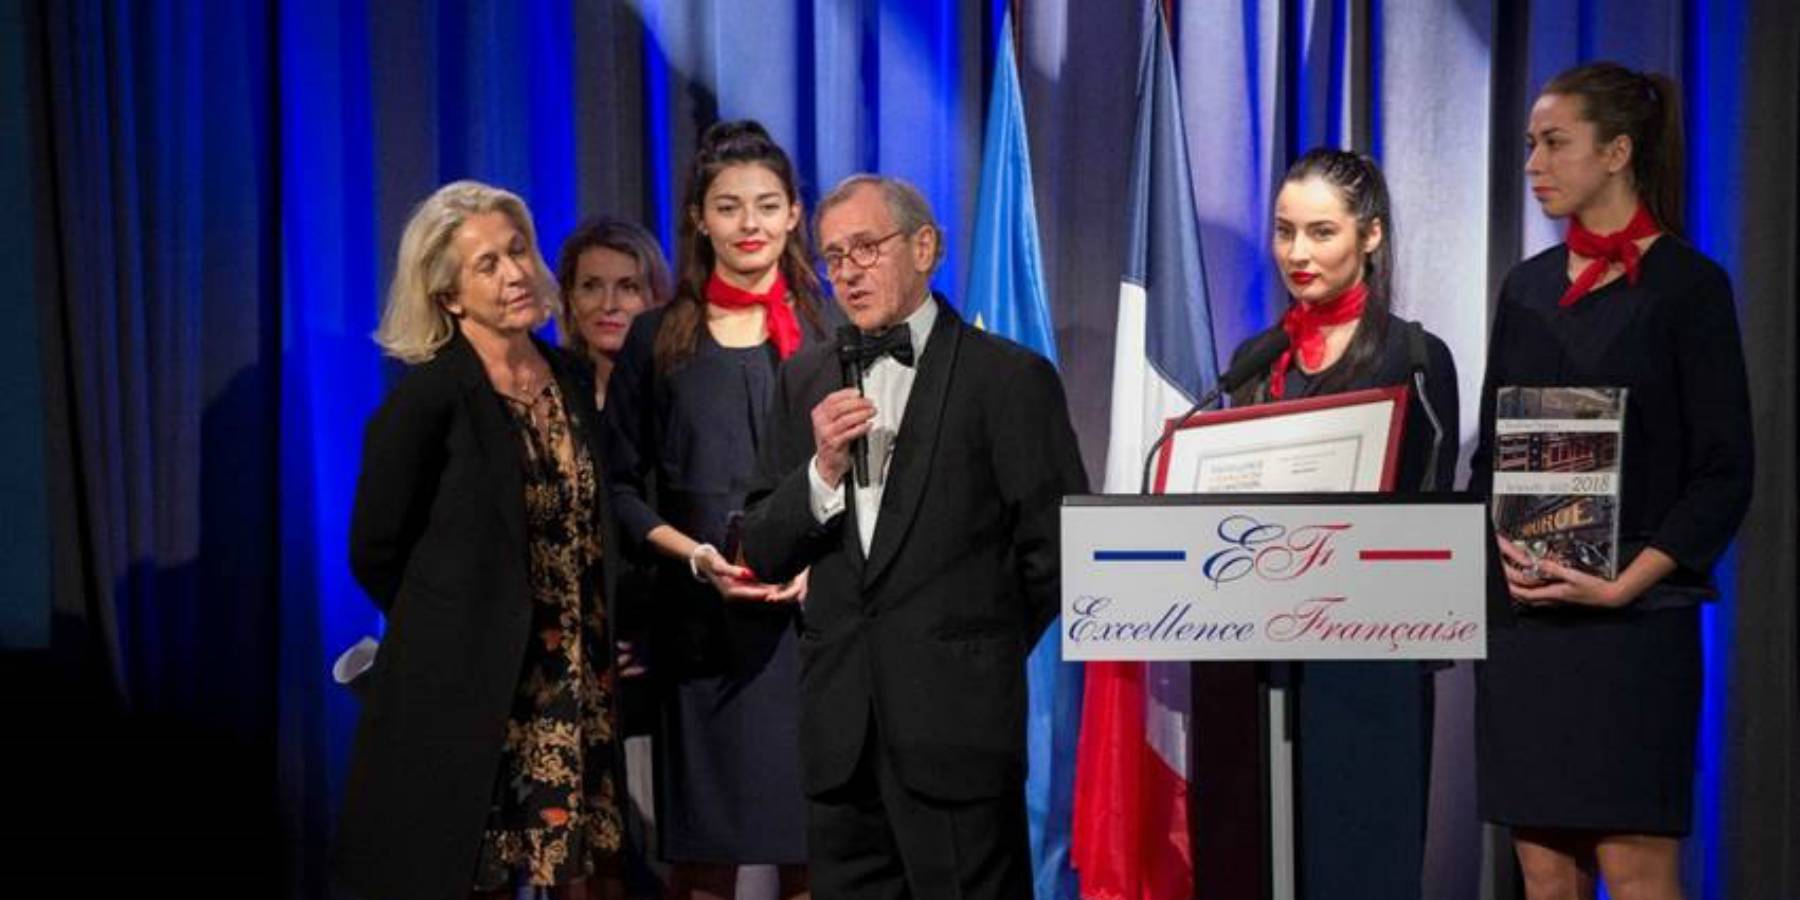 Le Cordon Bleu París recibió trofeo de la Excelencia Francesa